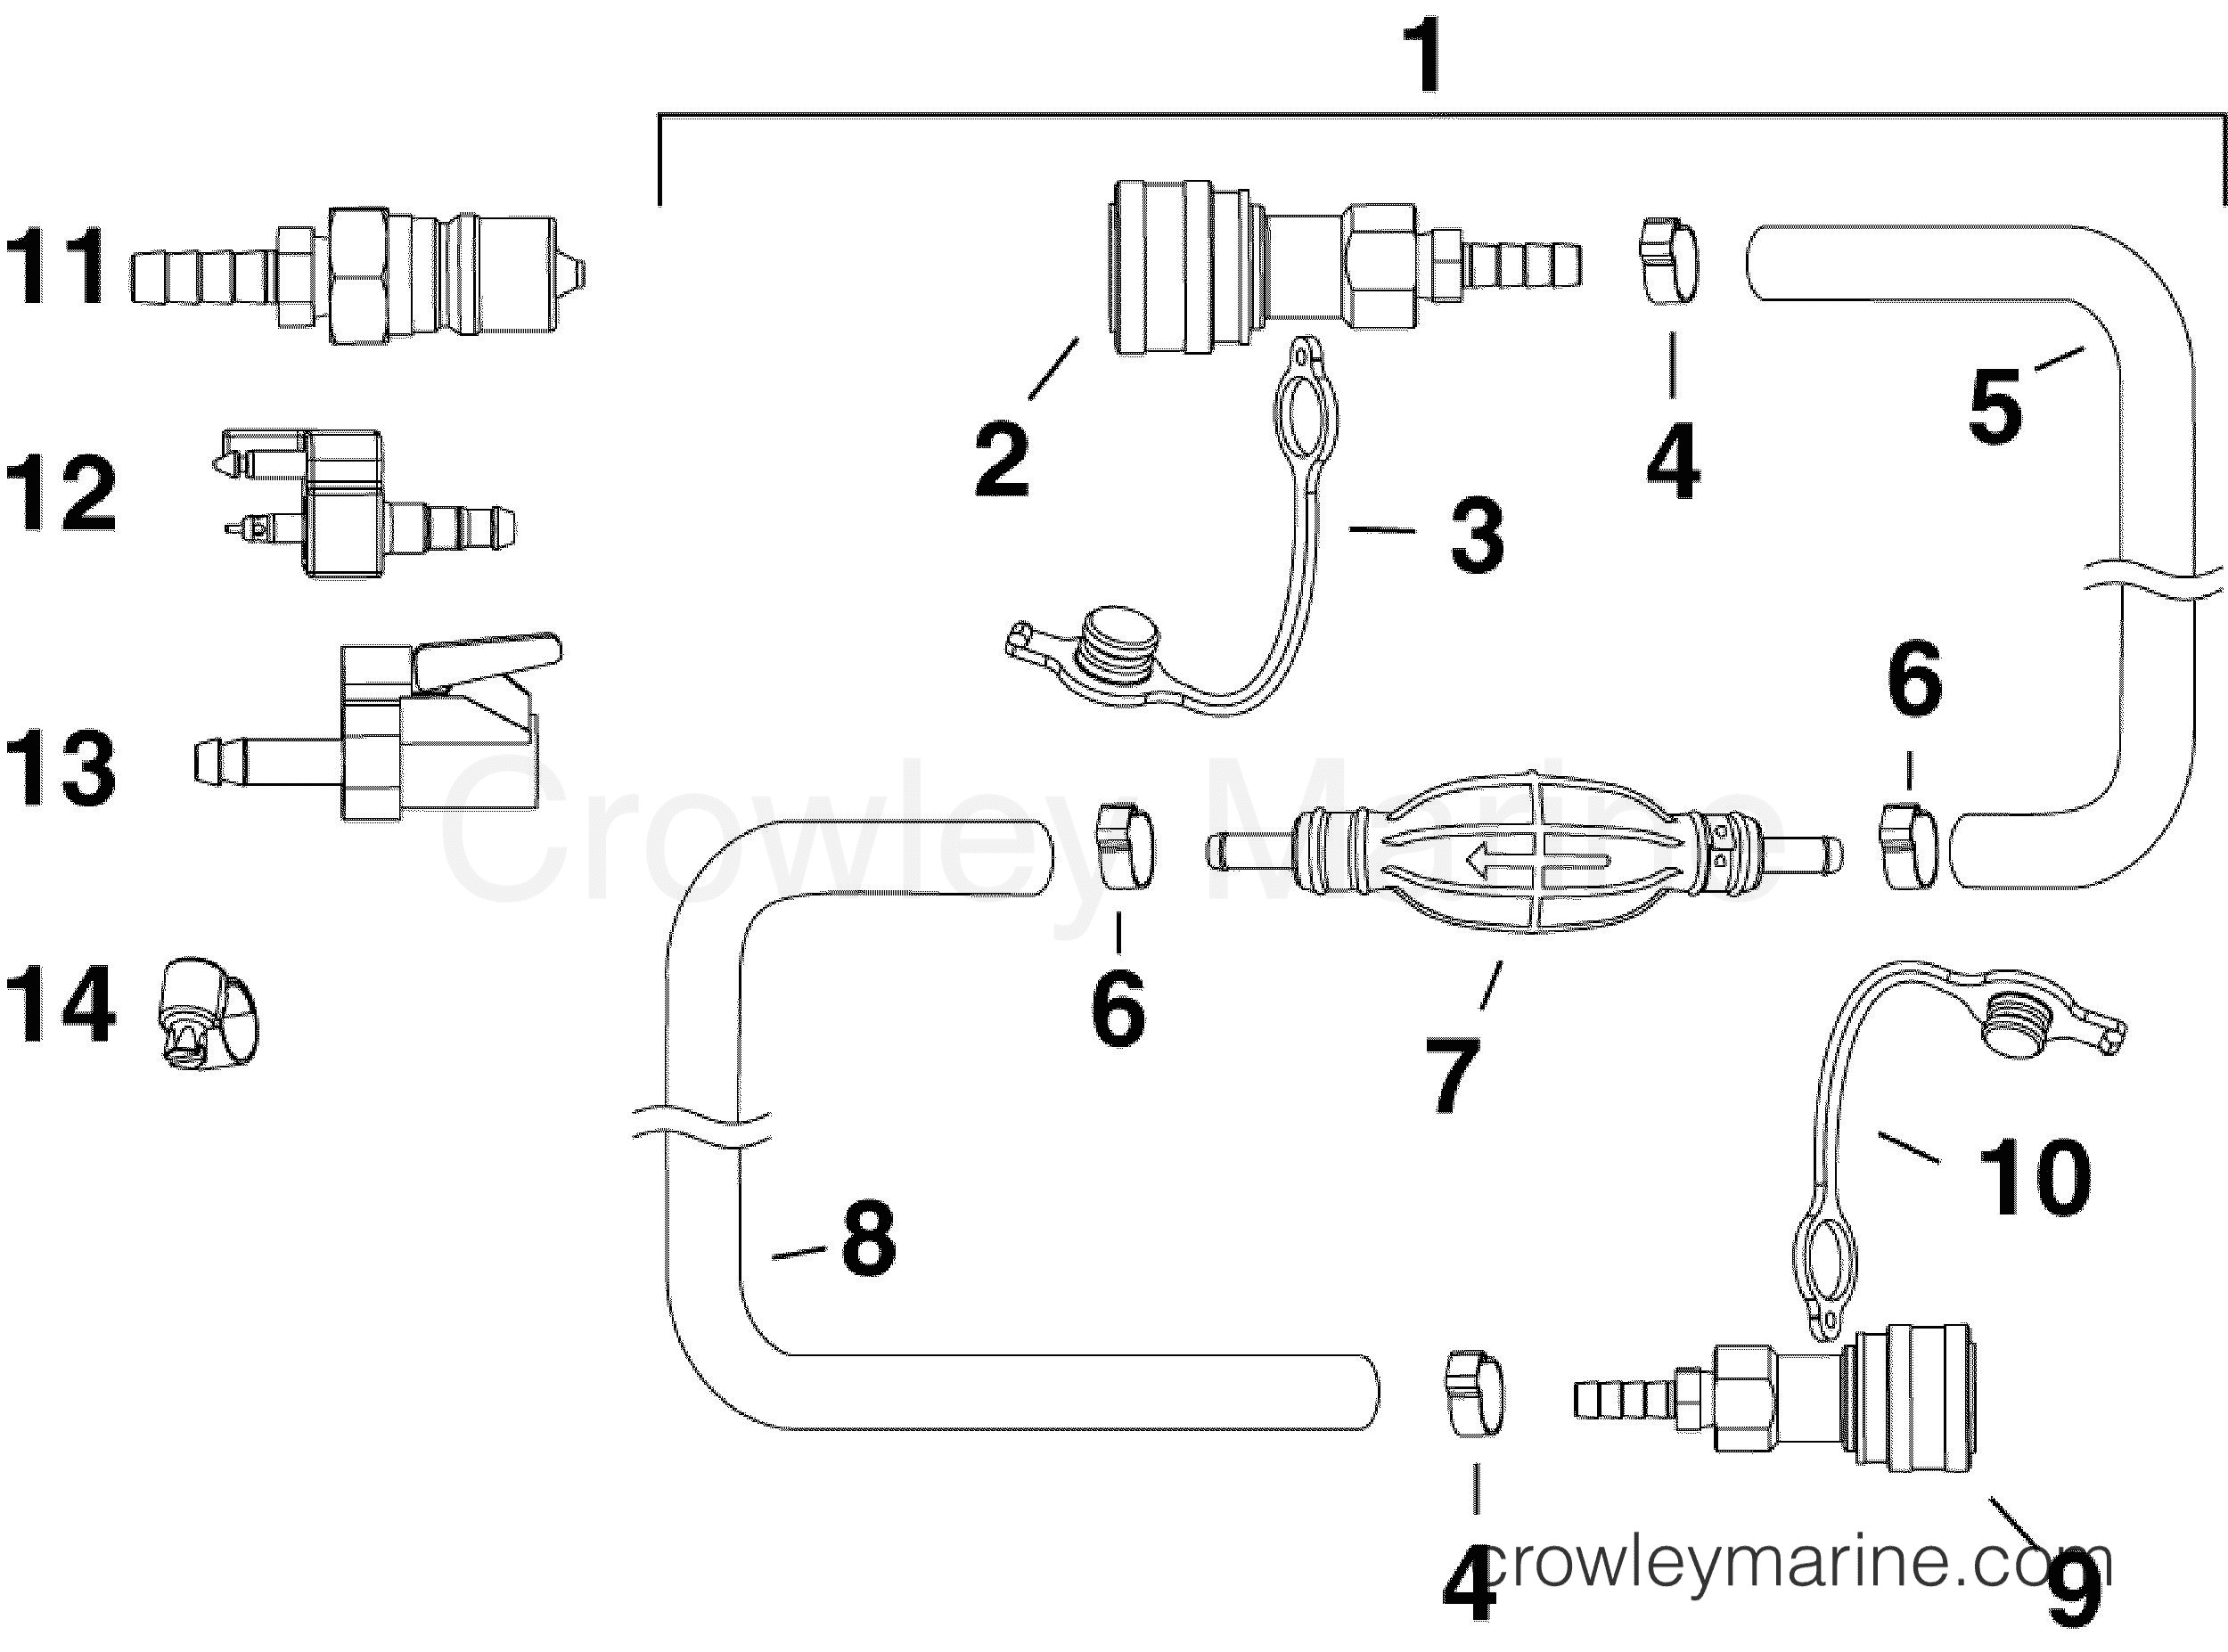 Evinrude Outboard Parts Diagram Fuel Hose & Primer Bulb assy Ab Evinrude Outboards 55 Mfe Of Evinrude Outboard Parts Diagram